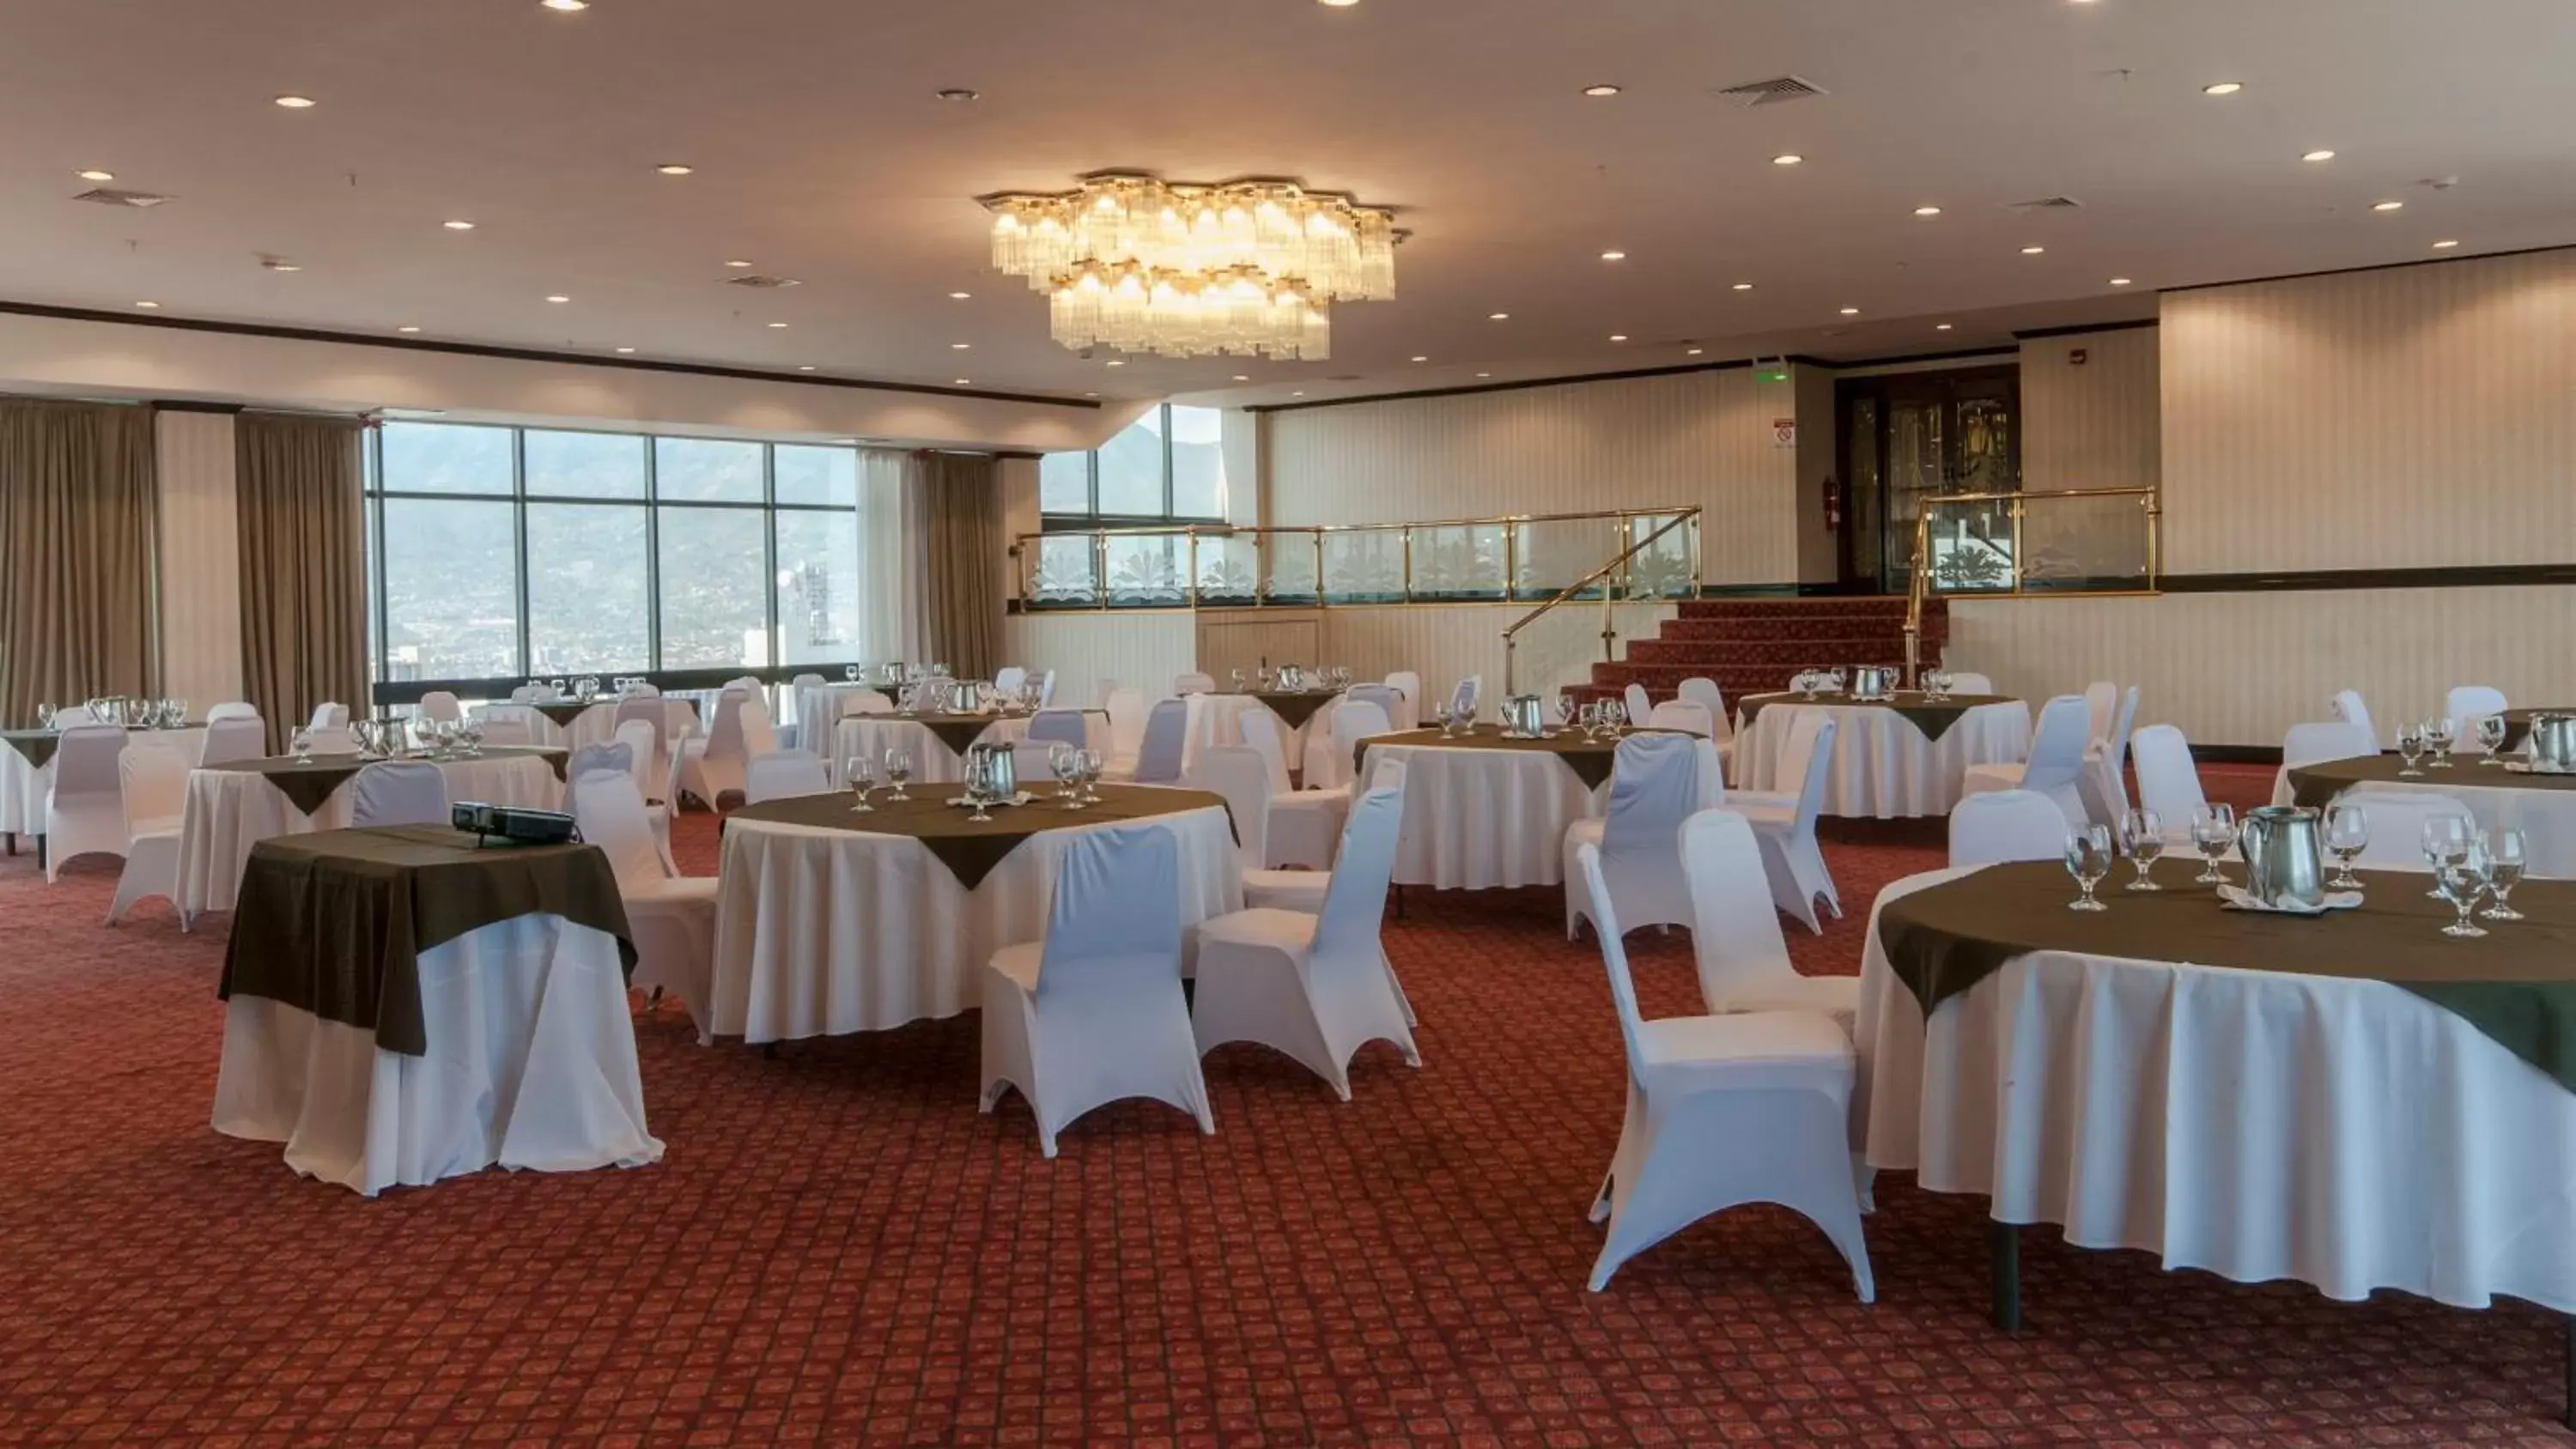 Banquet/Function facilities, Banquet Facilities in Holiday Inn San Jose Aurola, an IHG Hotel